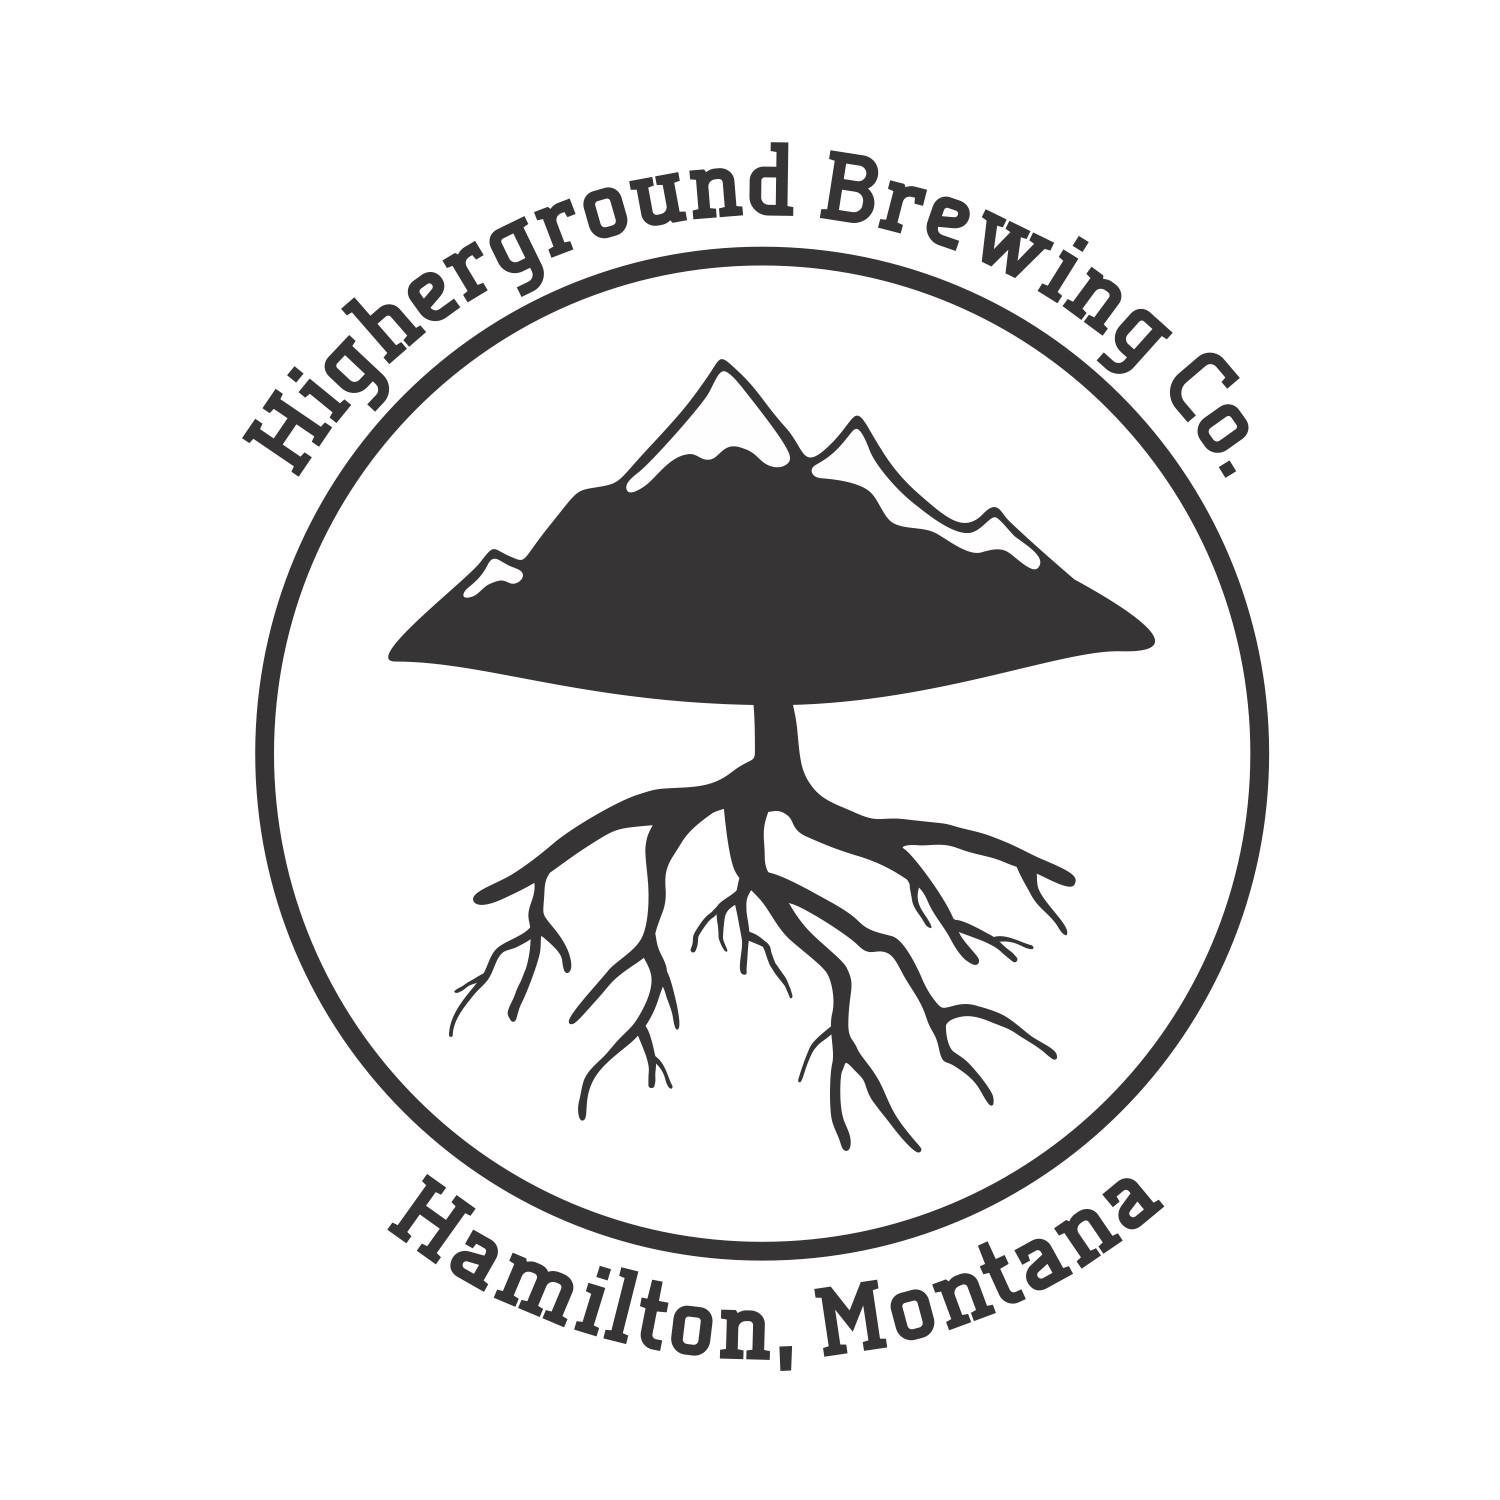 Higherground Brewing Co